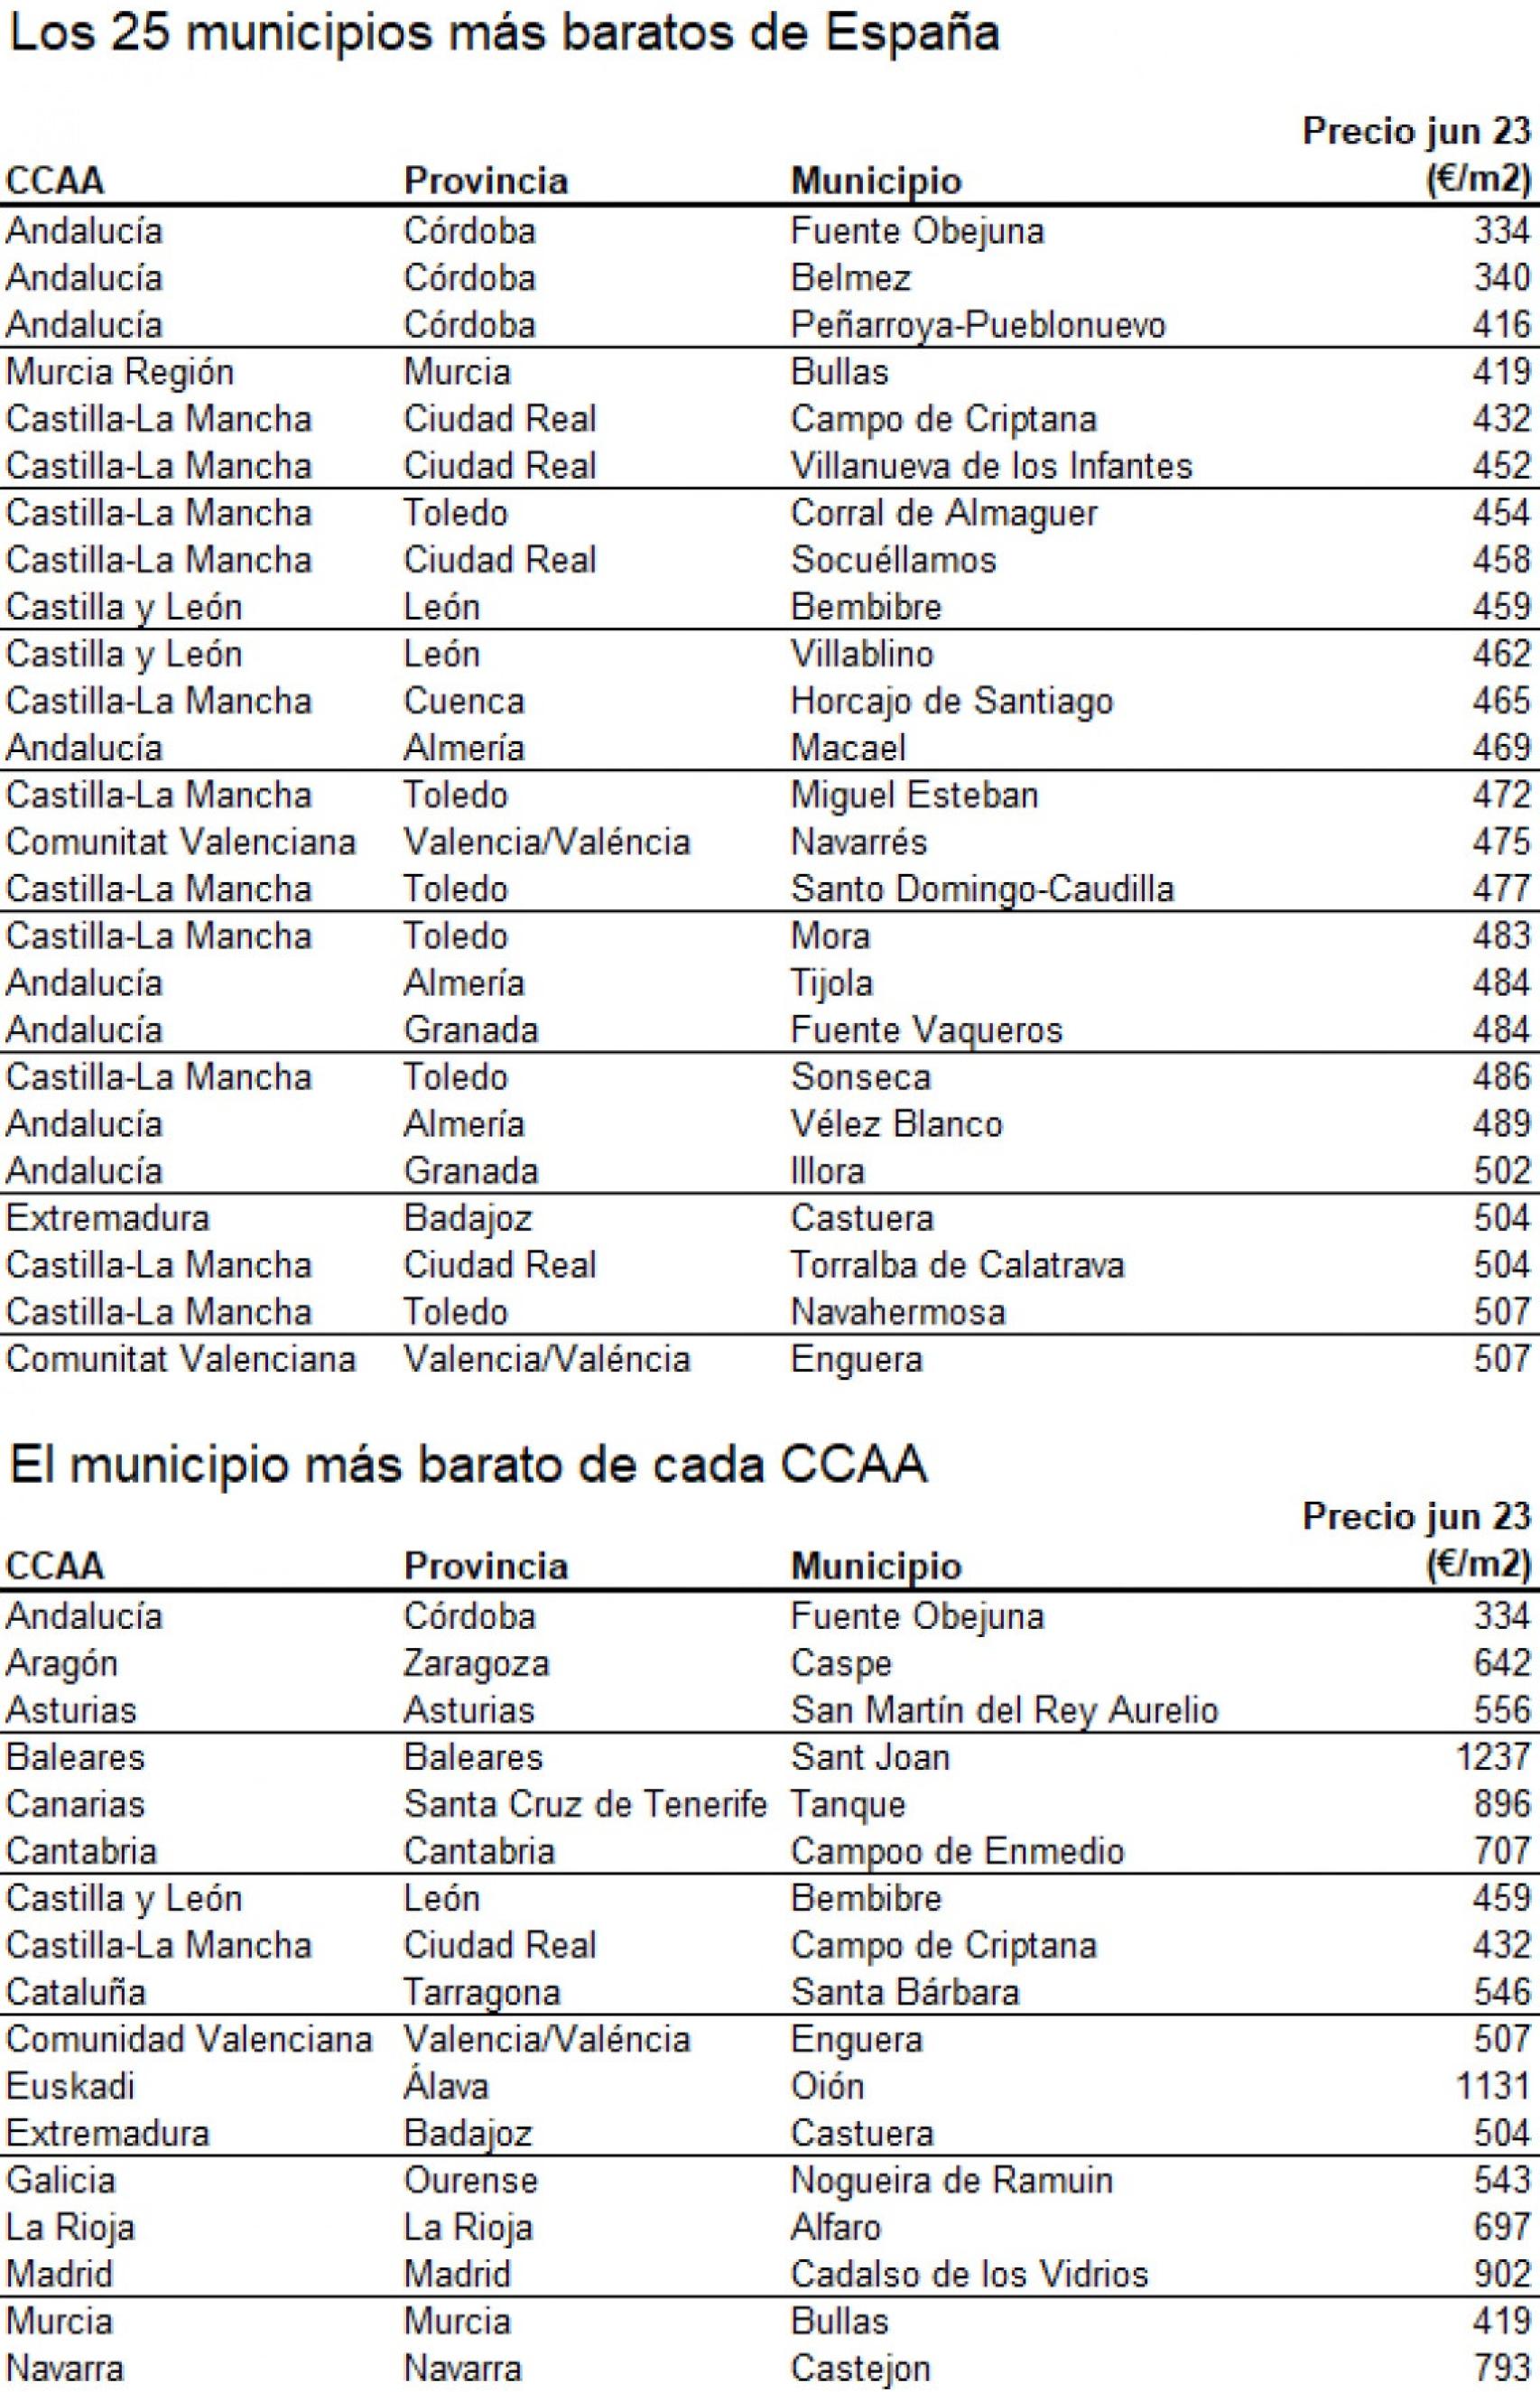 Los 25 municipios más baratos de España para comprar casa.